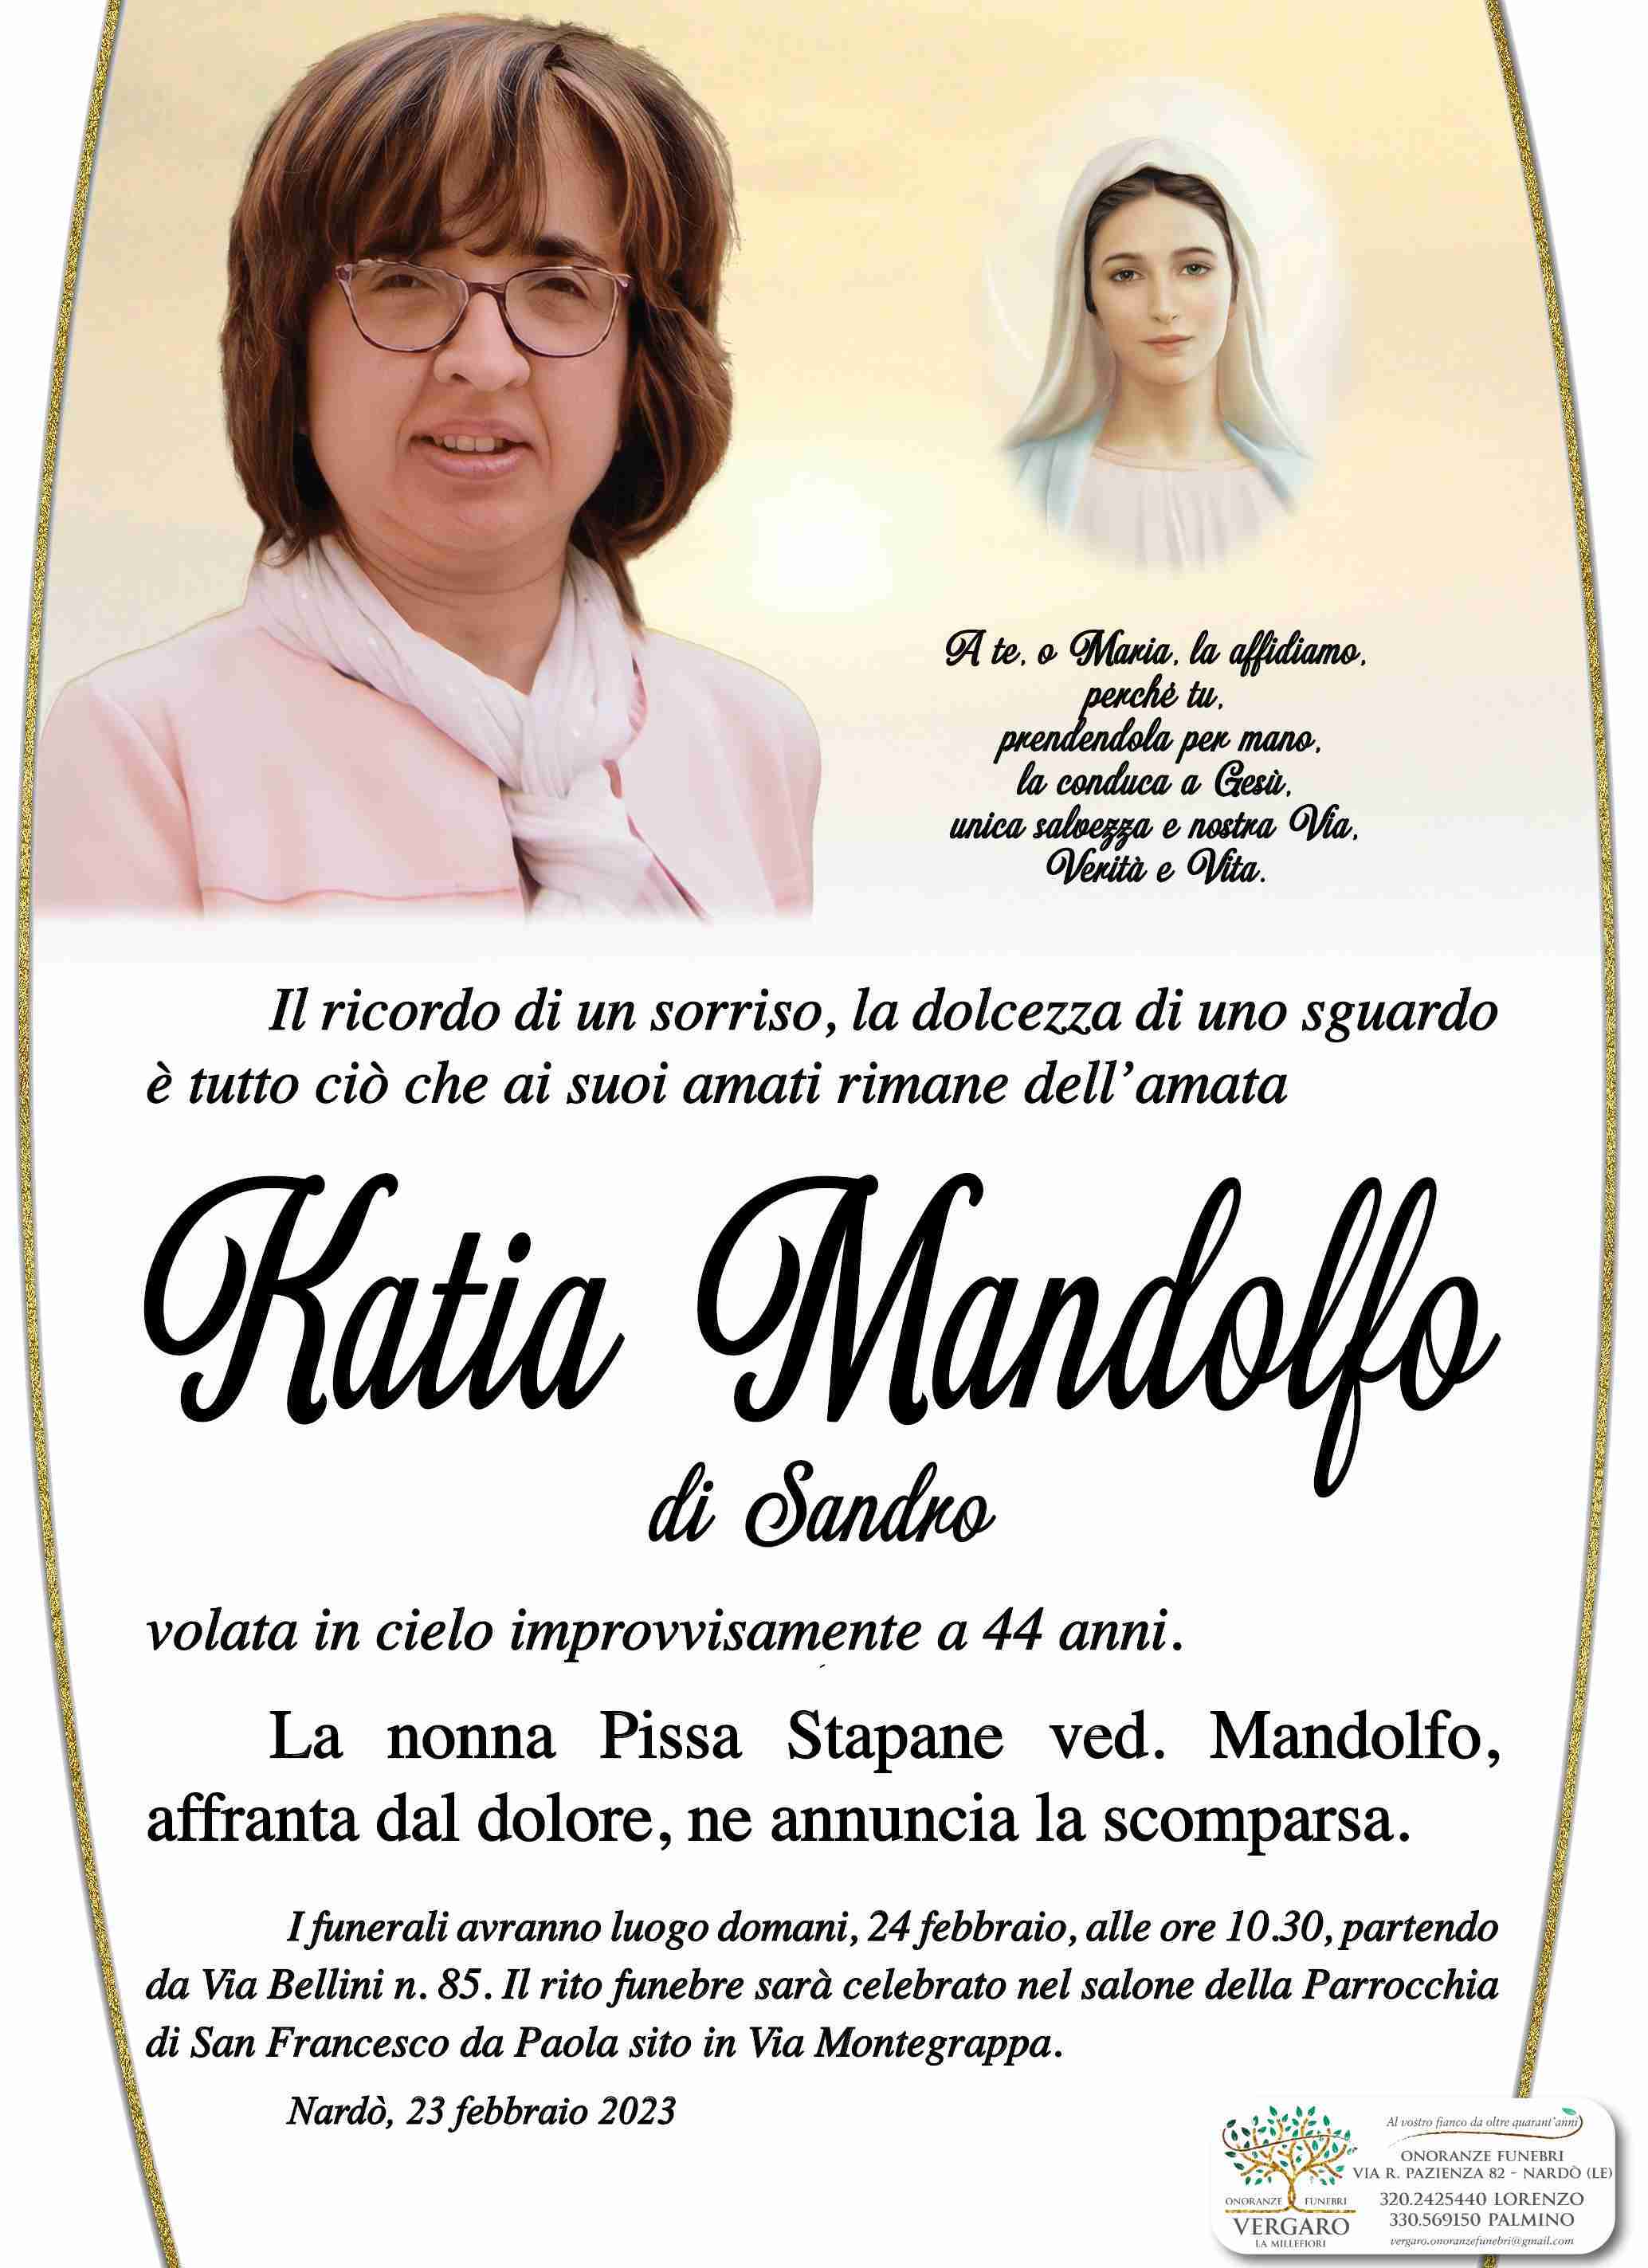 Katiuscia Mandolfo